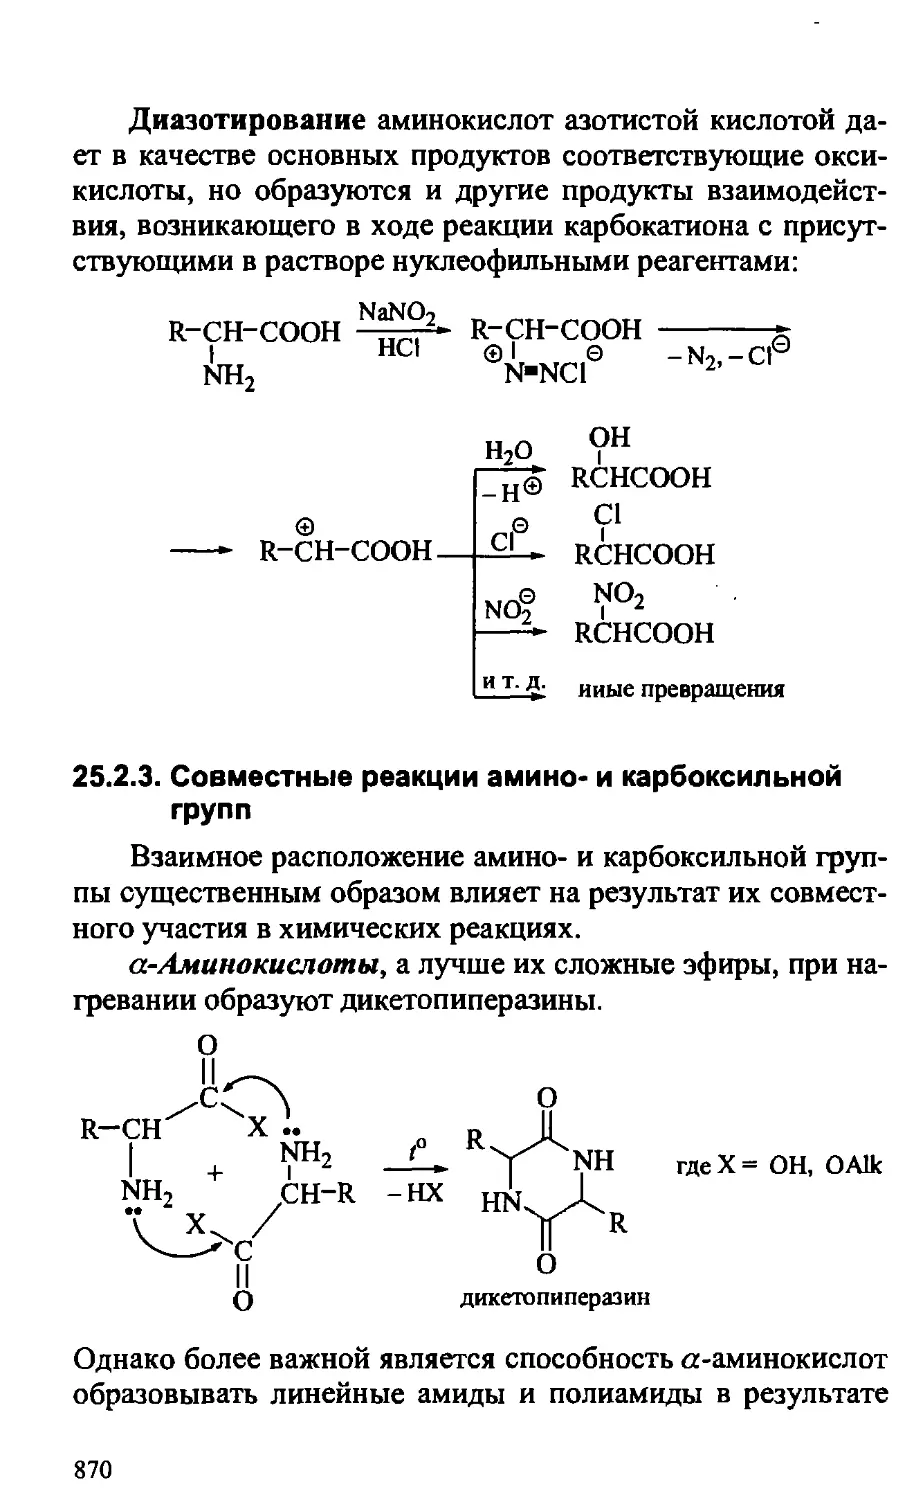 {870} 25.2.3. Совместные реакции амино- и карбоксильной групп